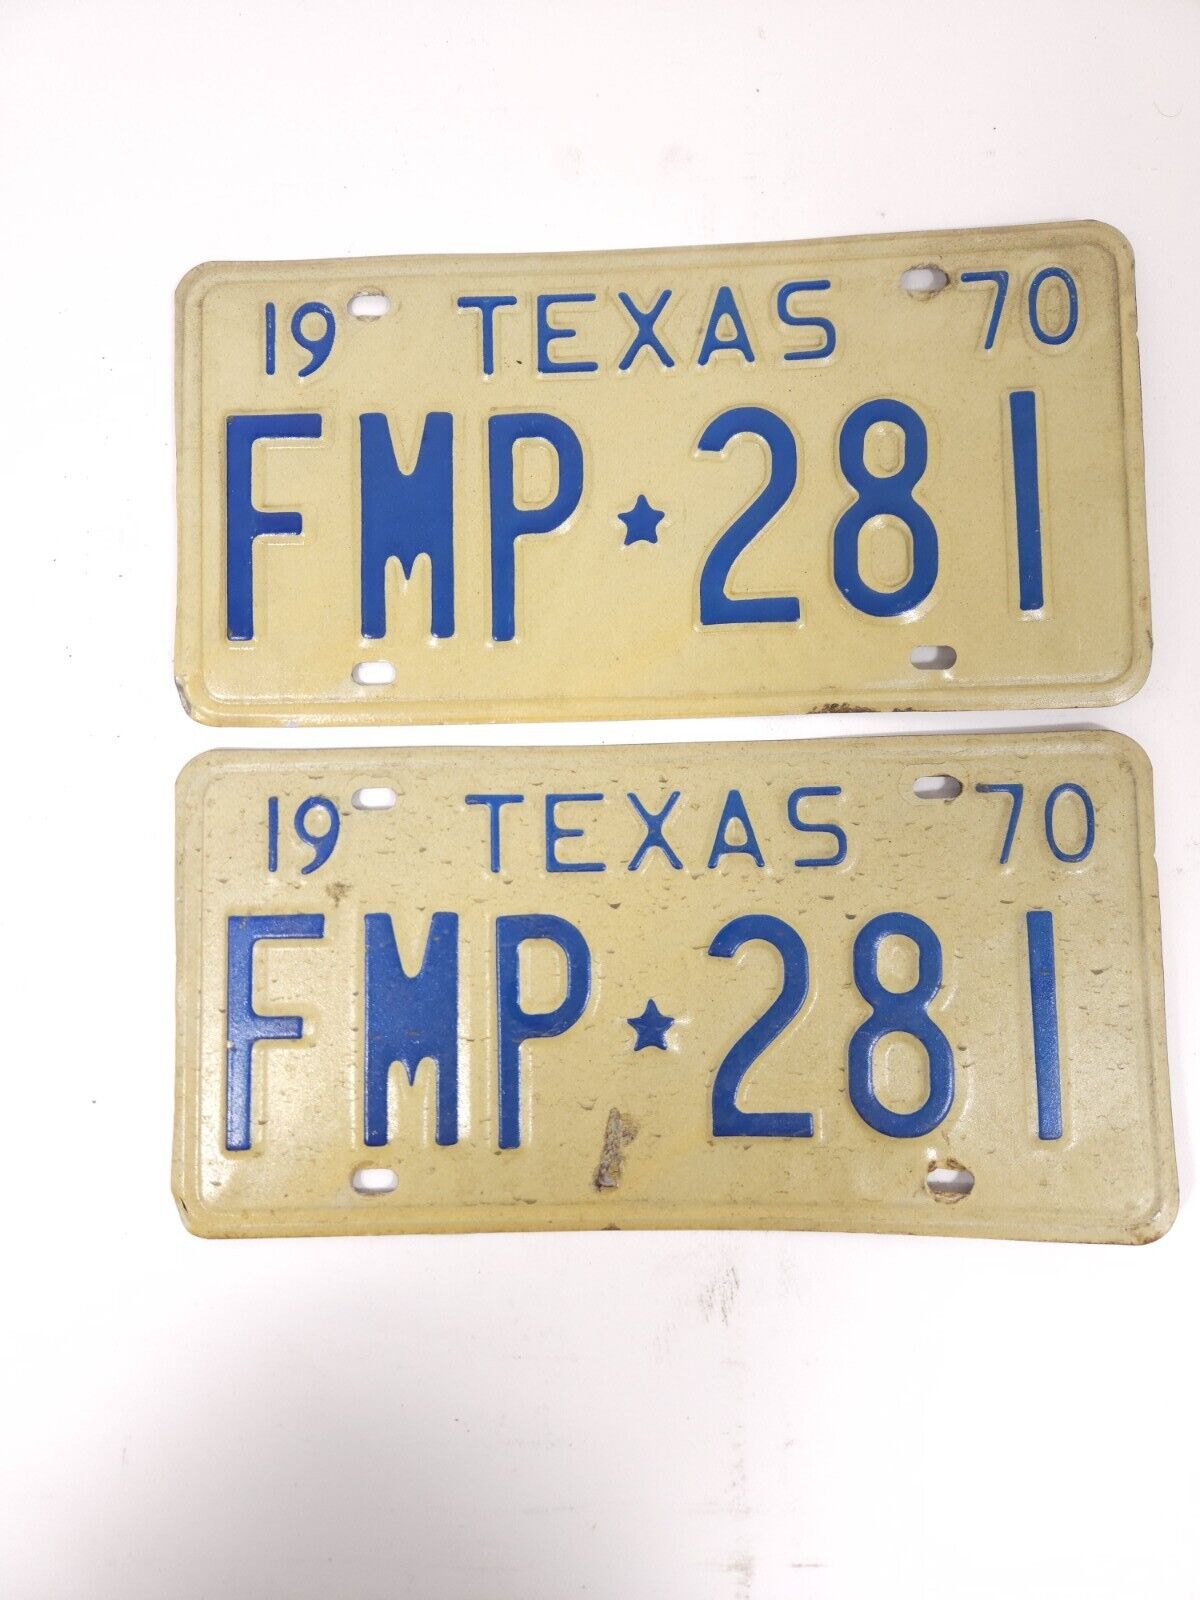 1970 Texas License Plates Pair FMP 281